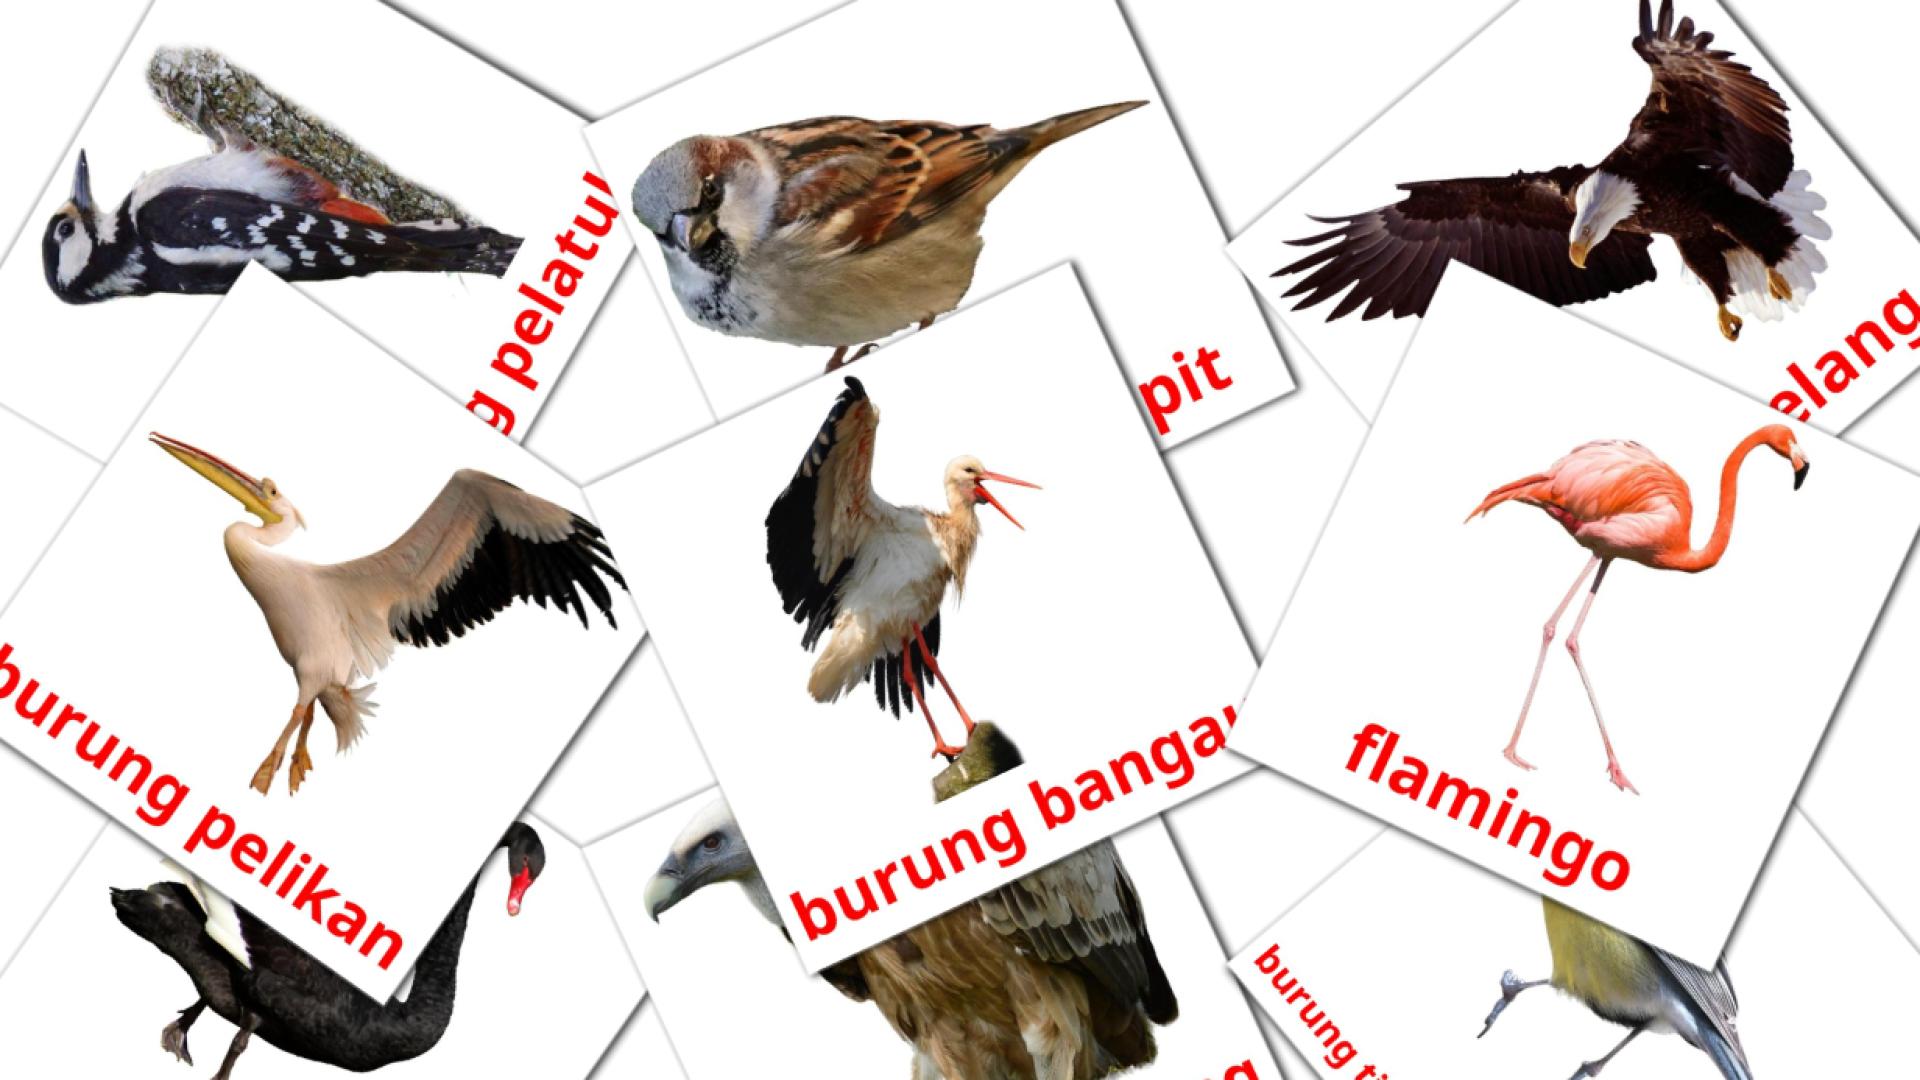 Bildkarten für Burung liar